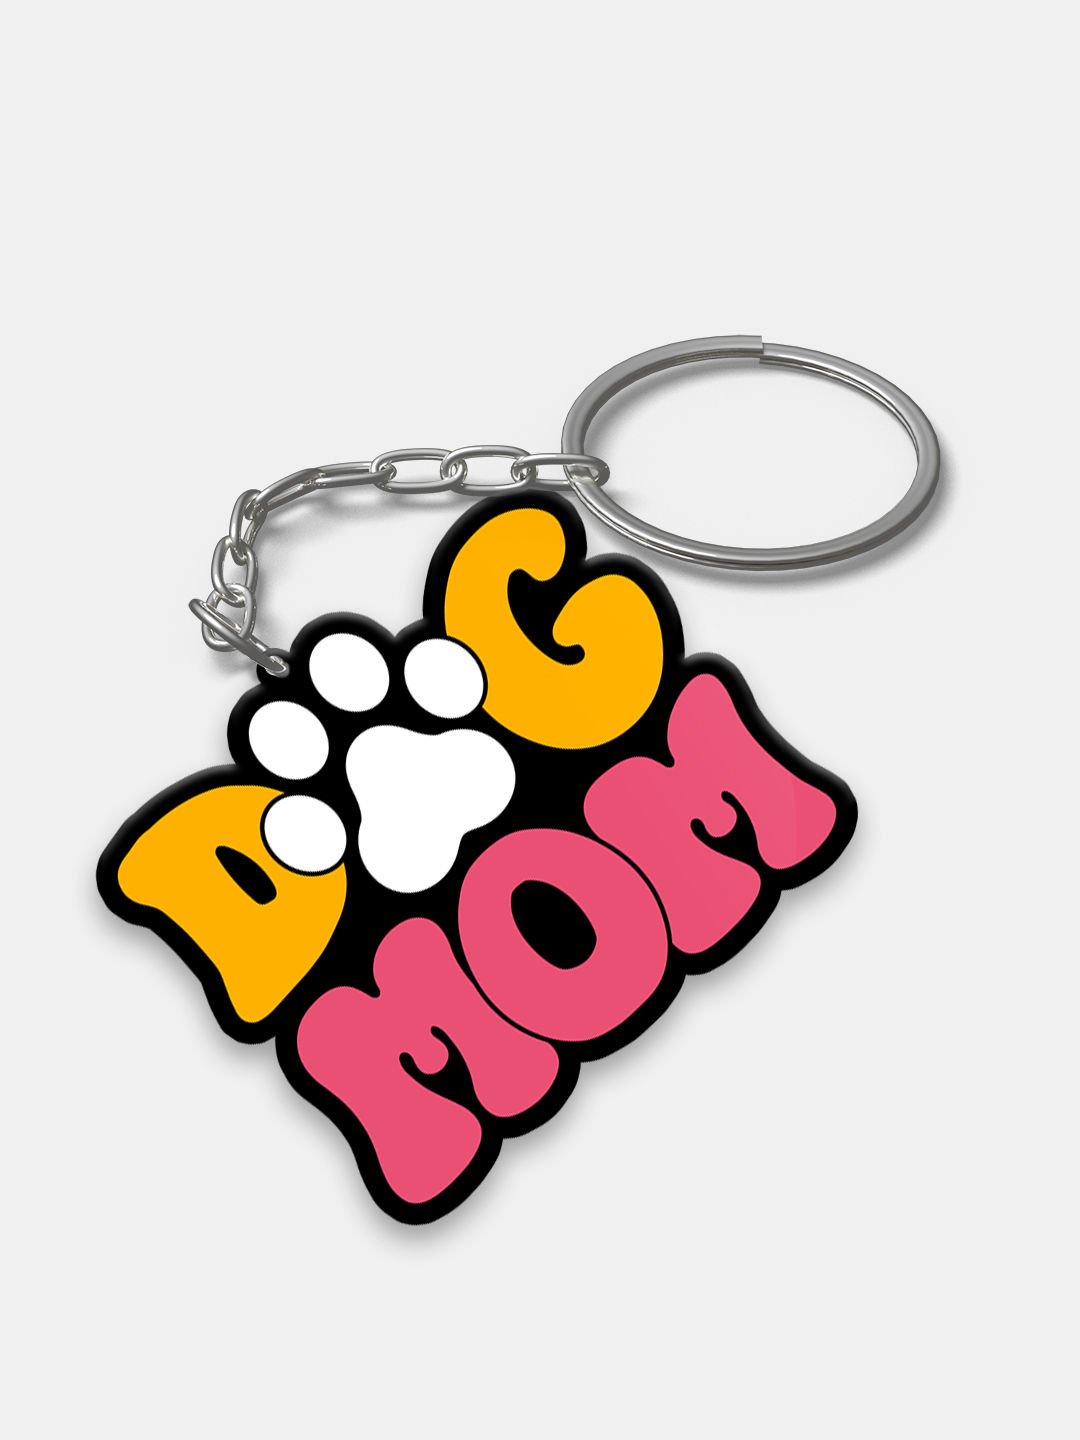 Dog Mom Key Chain